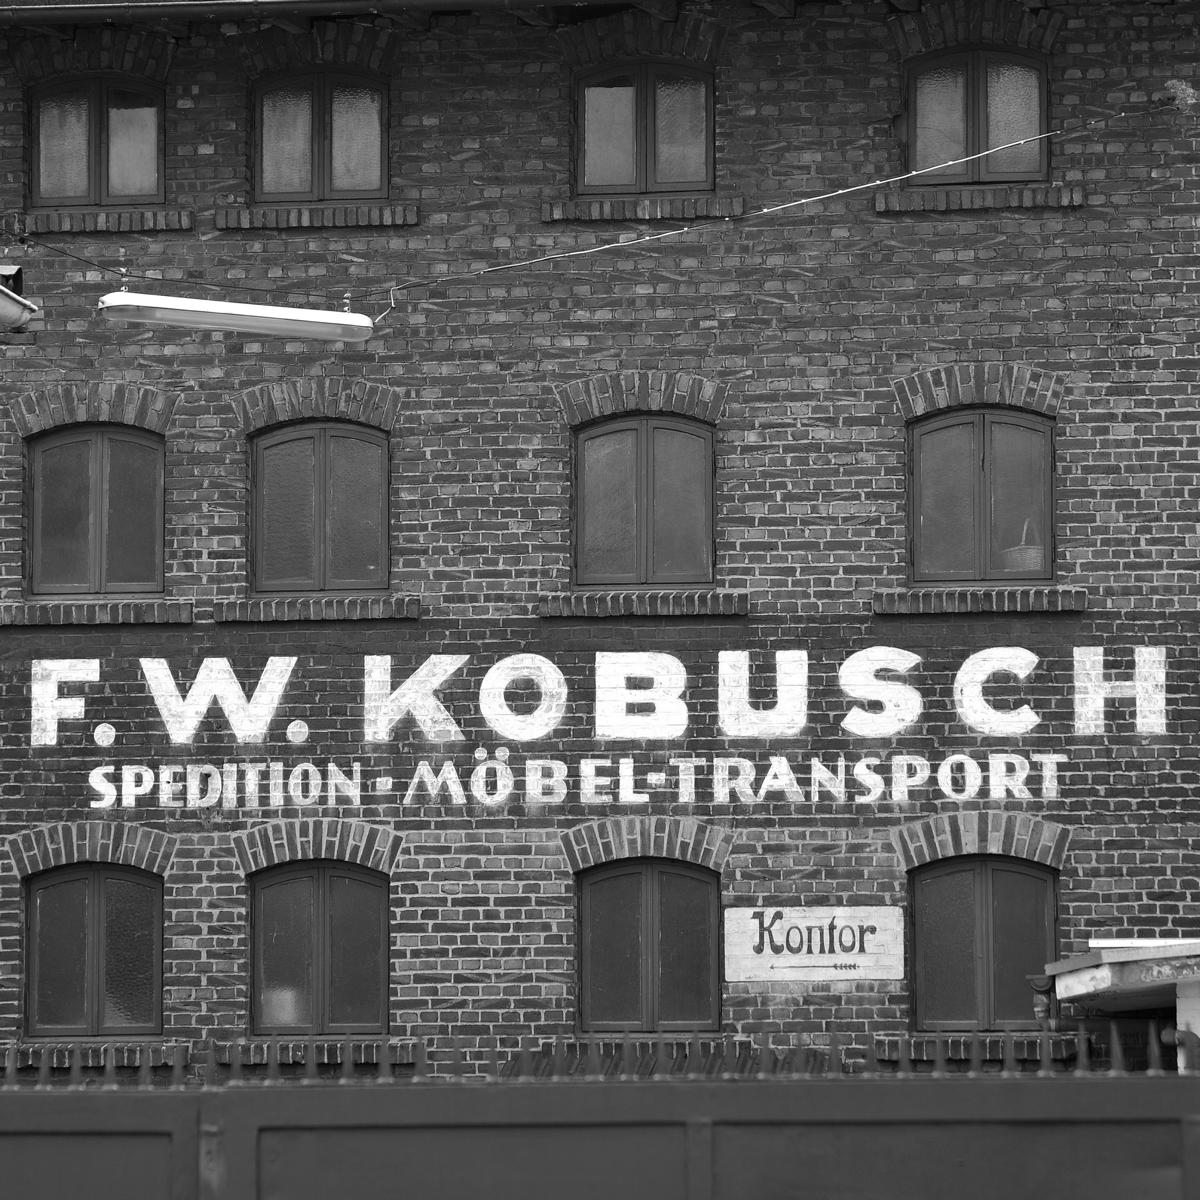 Kobusch